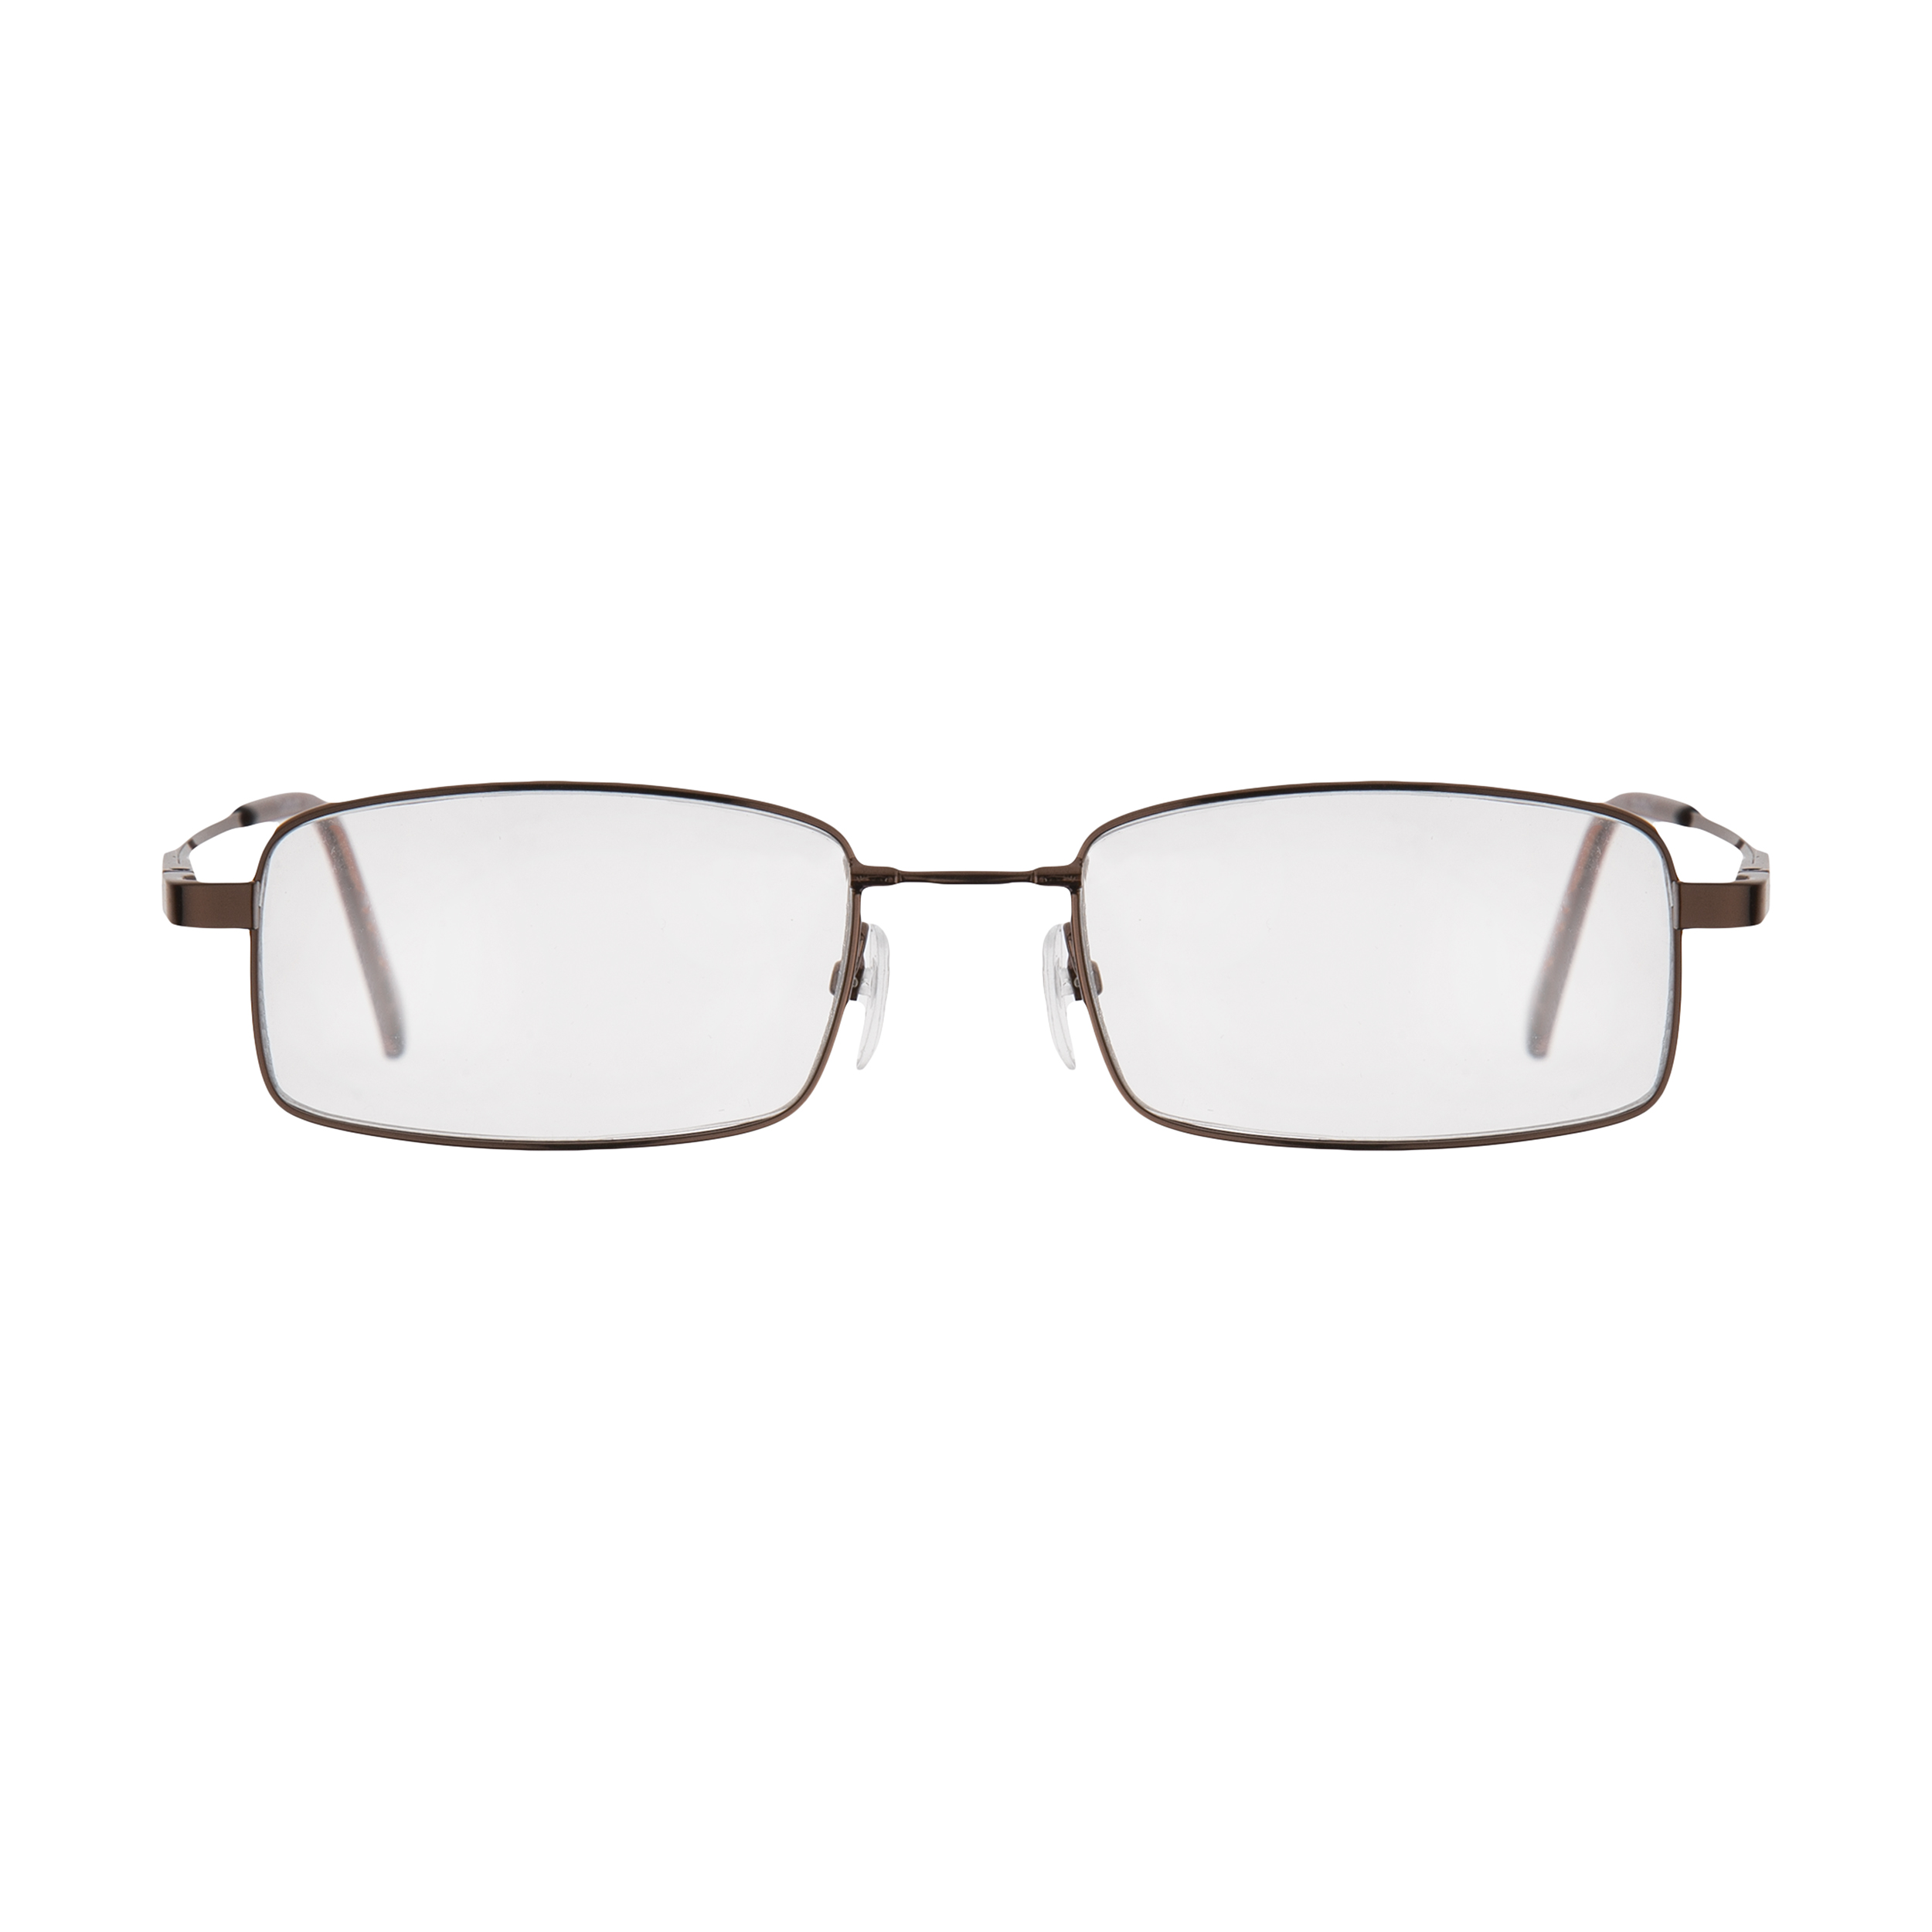 فریم عینک طبی چارمنت مدل 6009